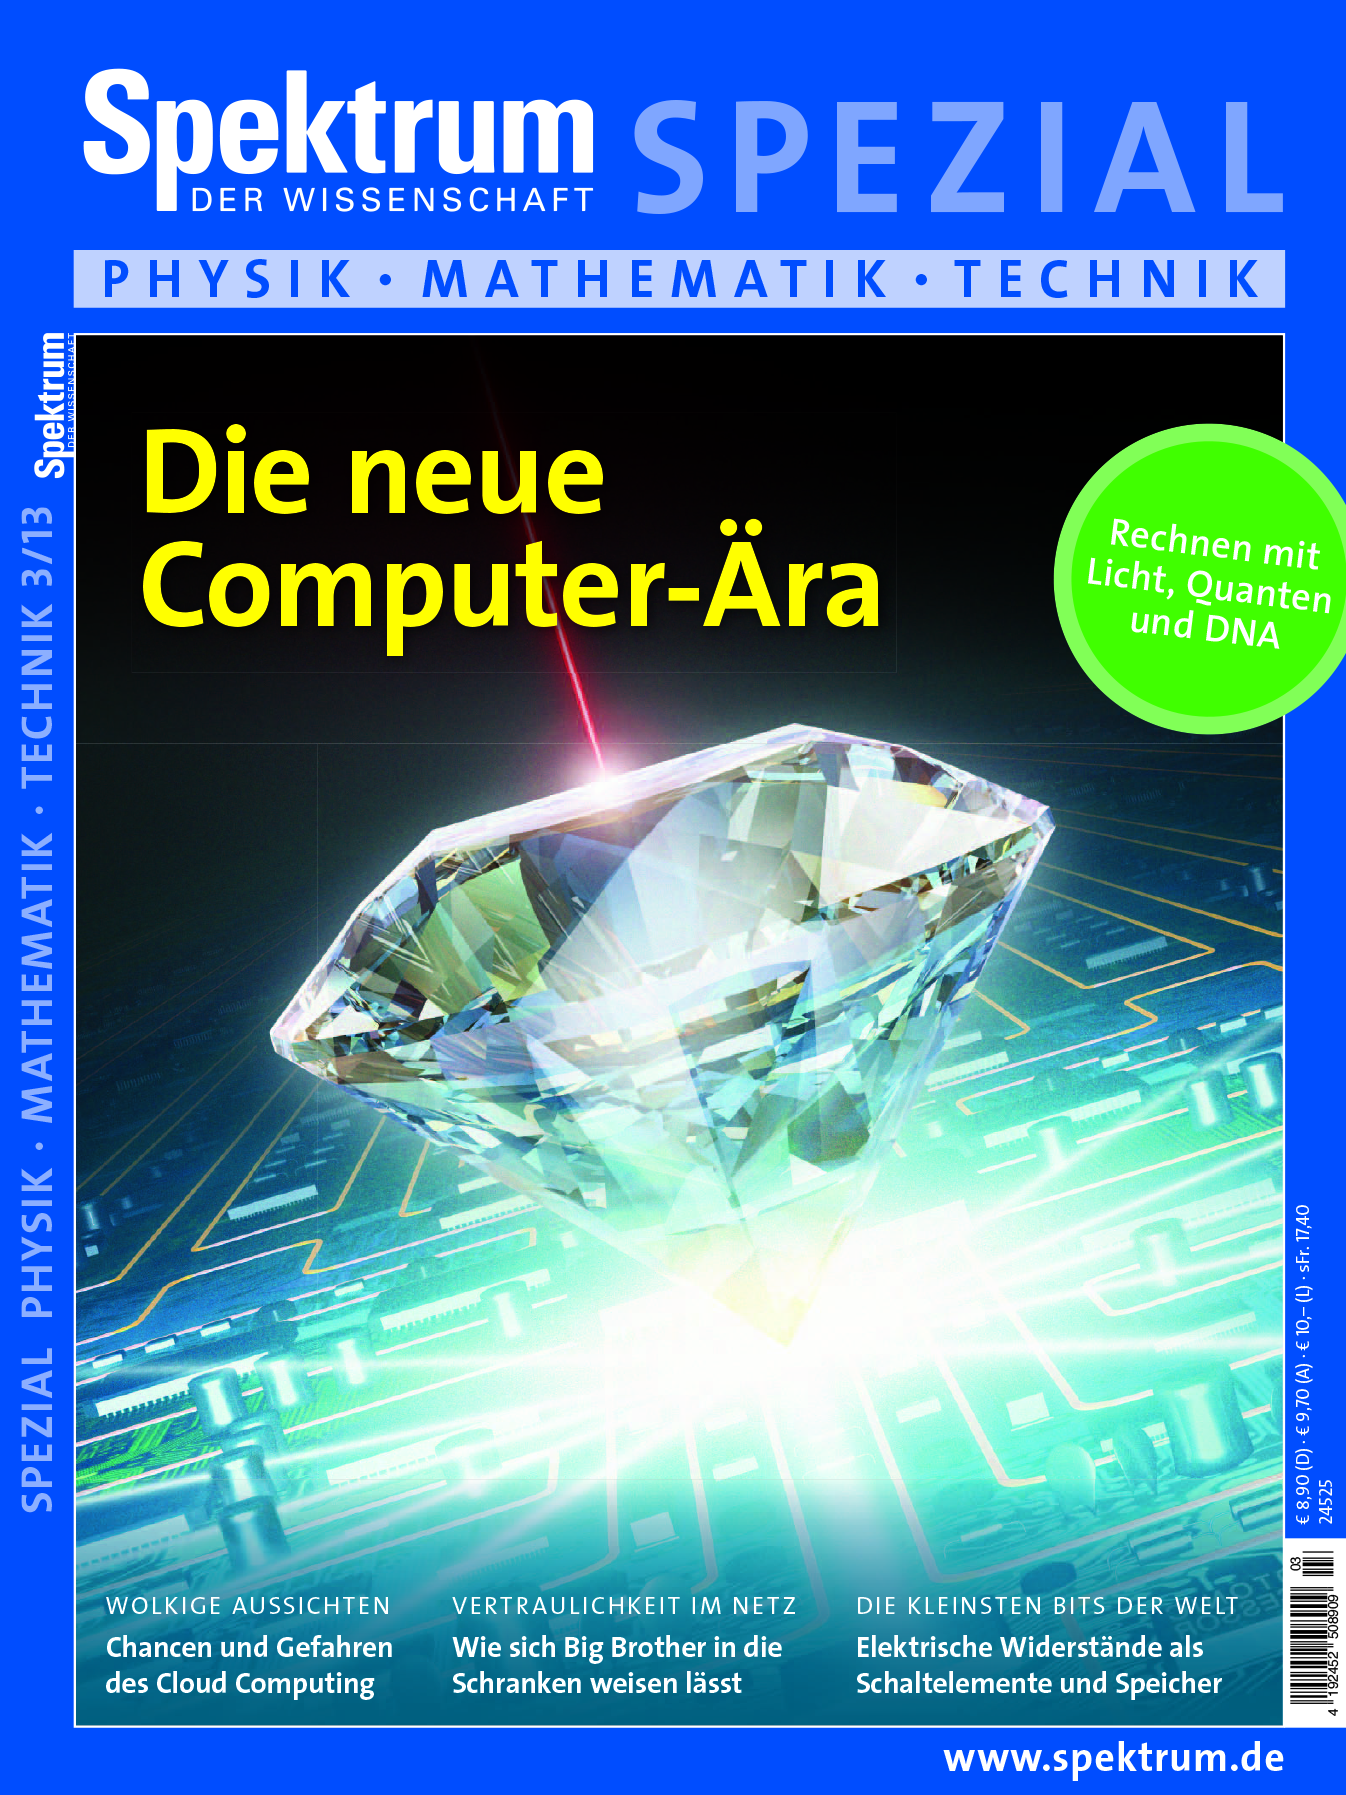 Spezial Physik Mathematik Technik 3/2013